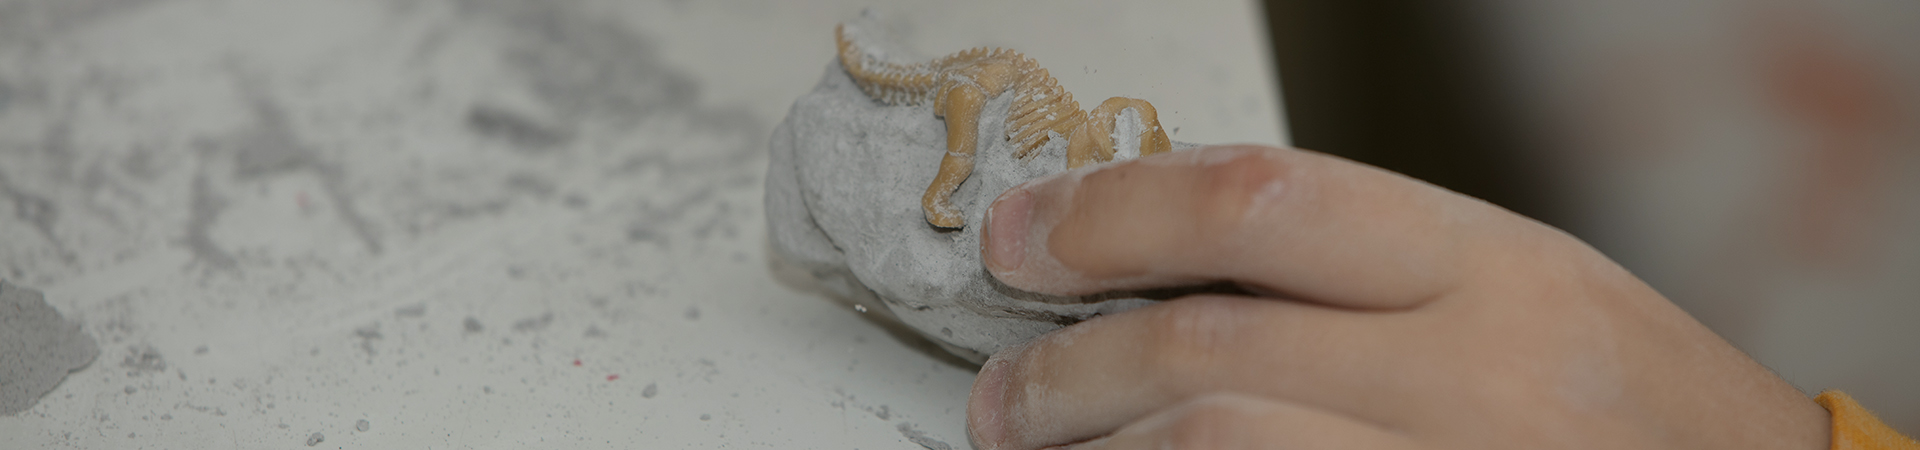 Imagen de un juego educativo para encontrar fósiles para un pequeño arqueólogo, con las manos de los niños cavando.